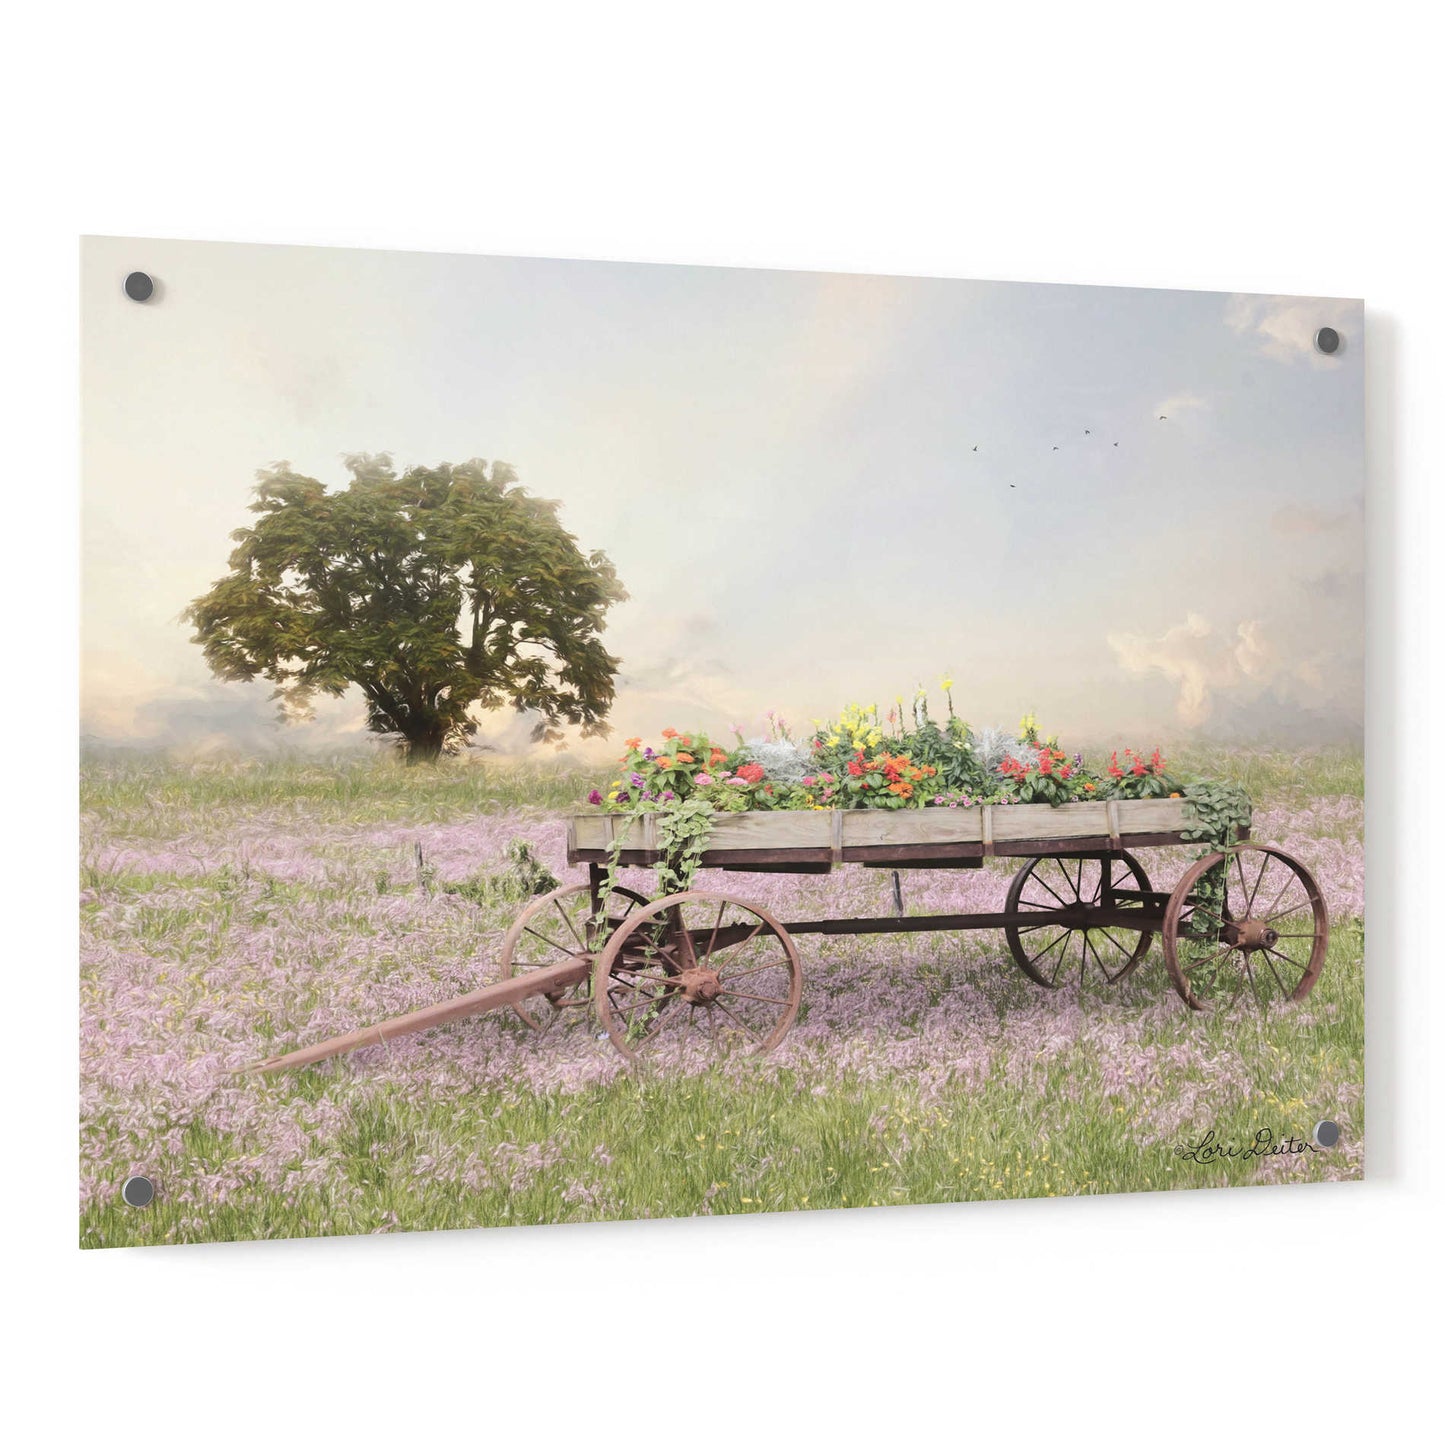 Epic Art 'Flower Wagon at Sunset' by Lori Deiter, Acrylic Glass Wall Art,36x24